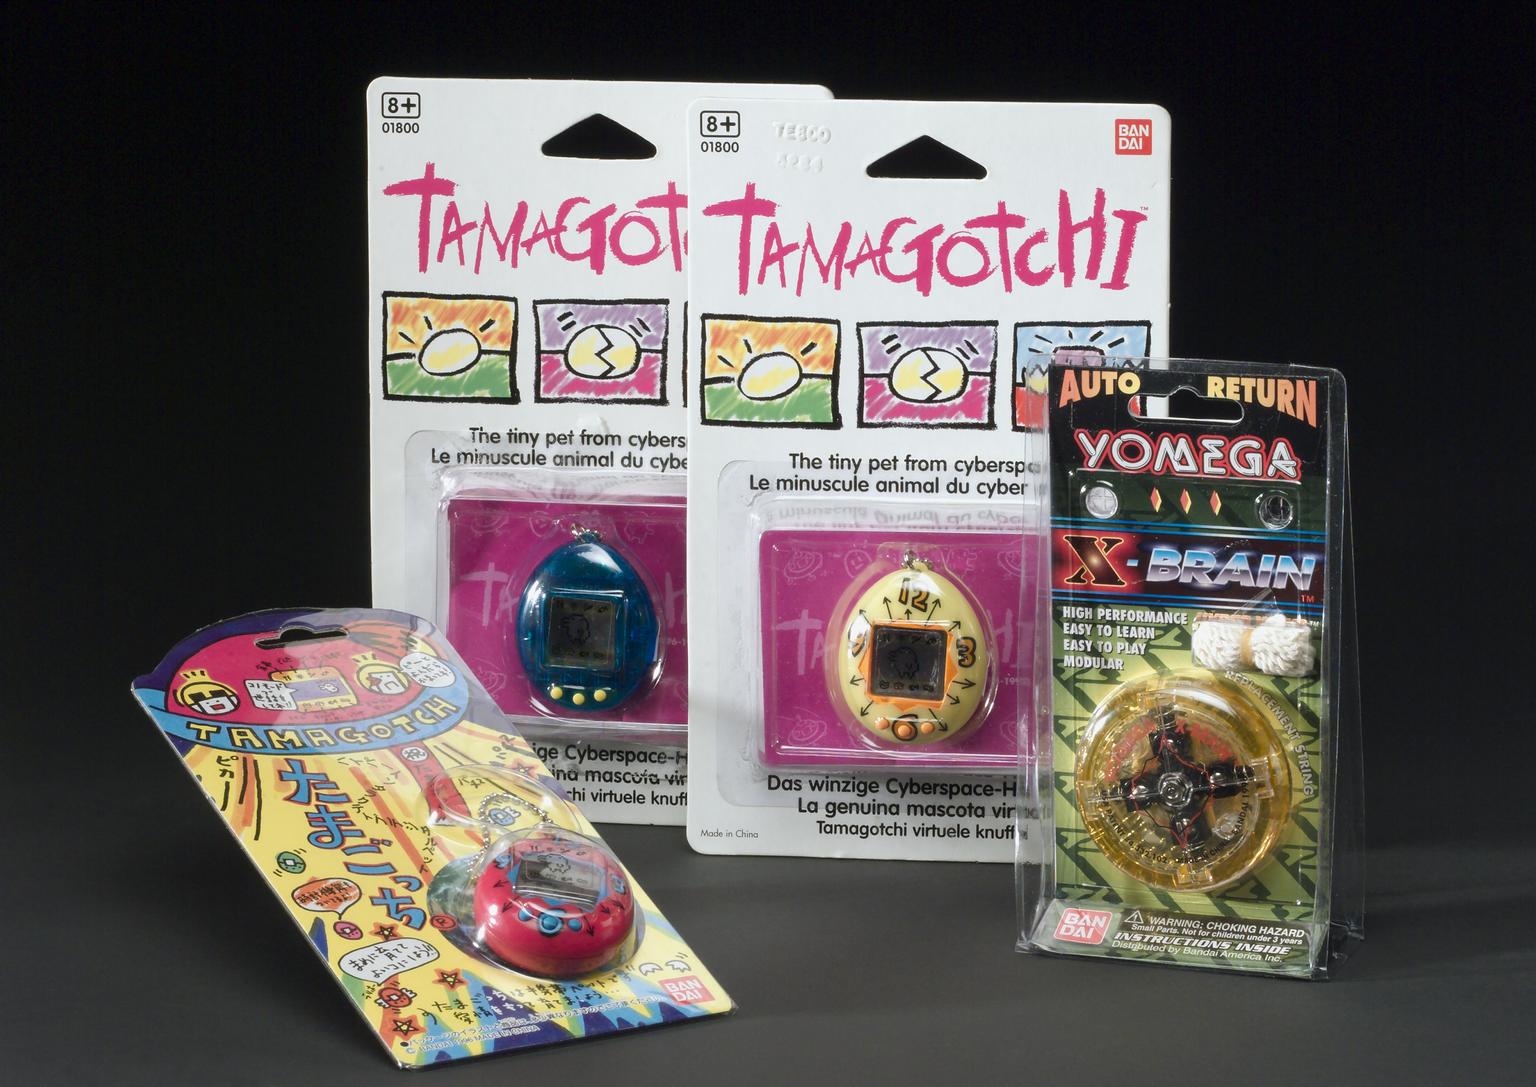 Electronic toys by Bandai (Tamagotchi cyber pets, 1996; Yomega X-Brain auto return yo-yo, 1998)